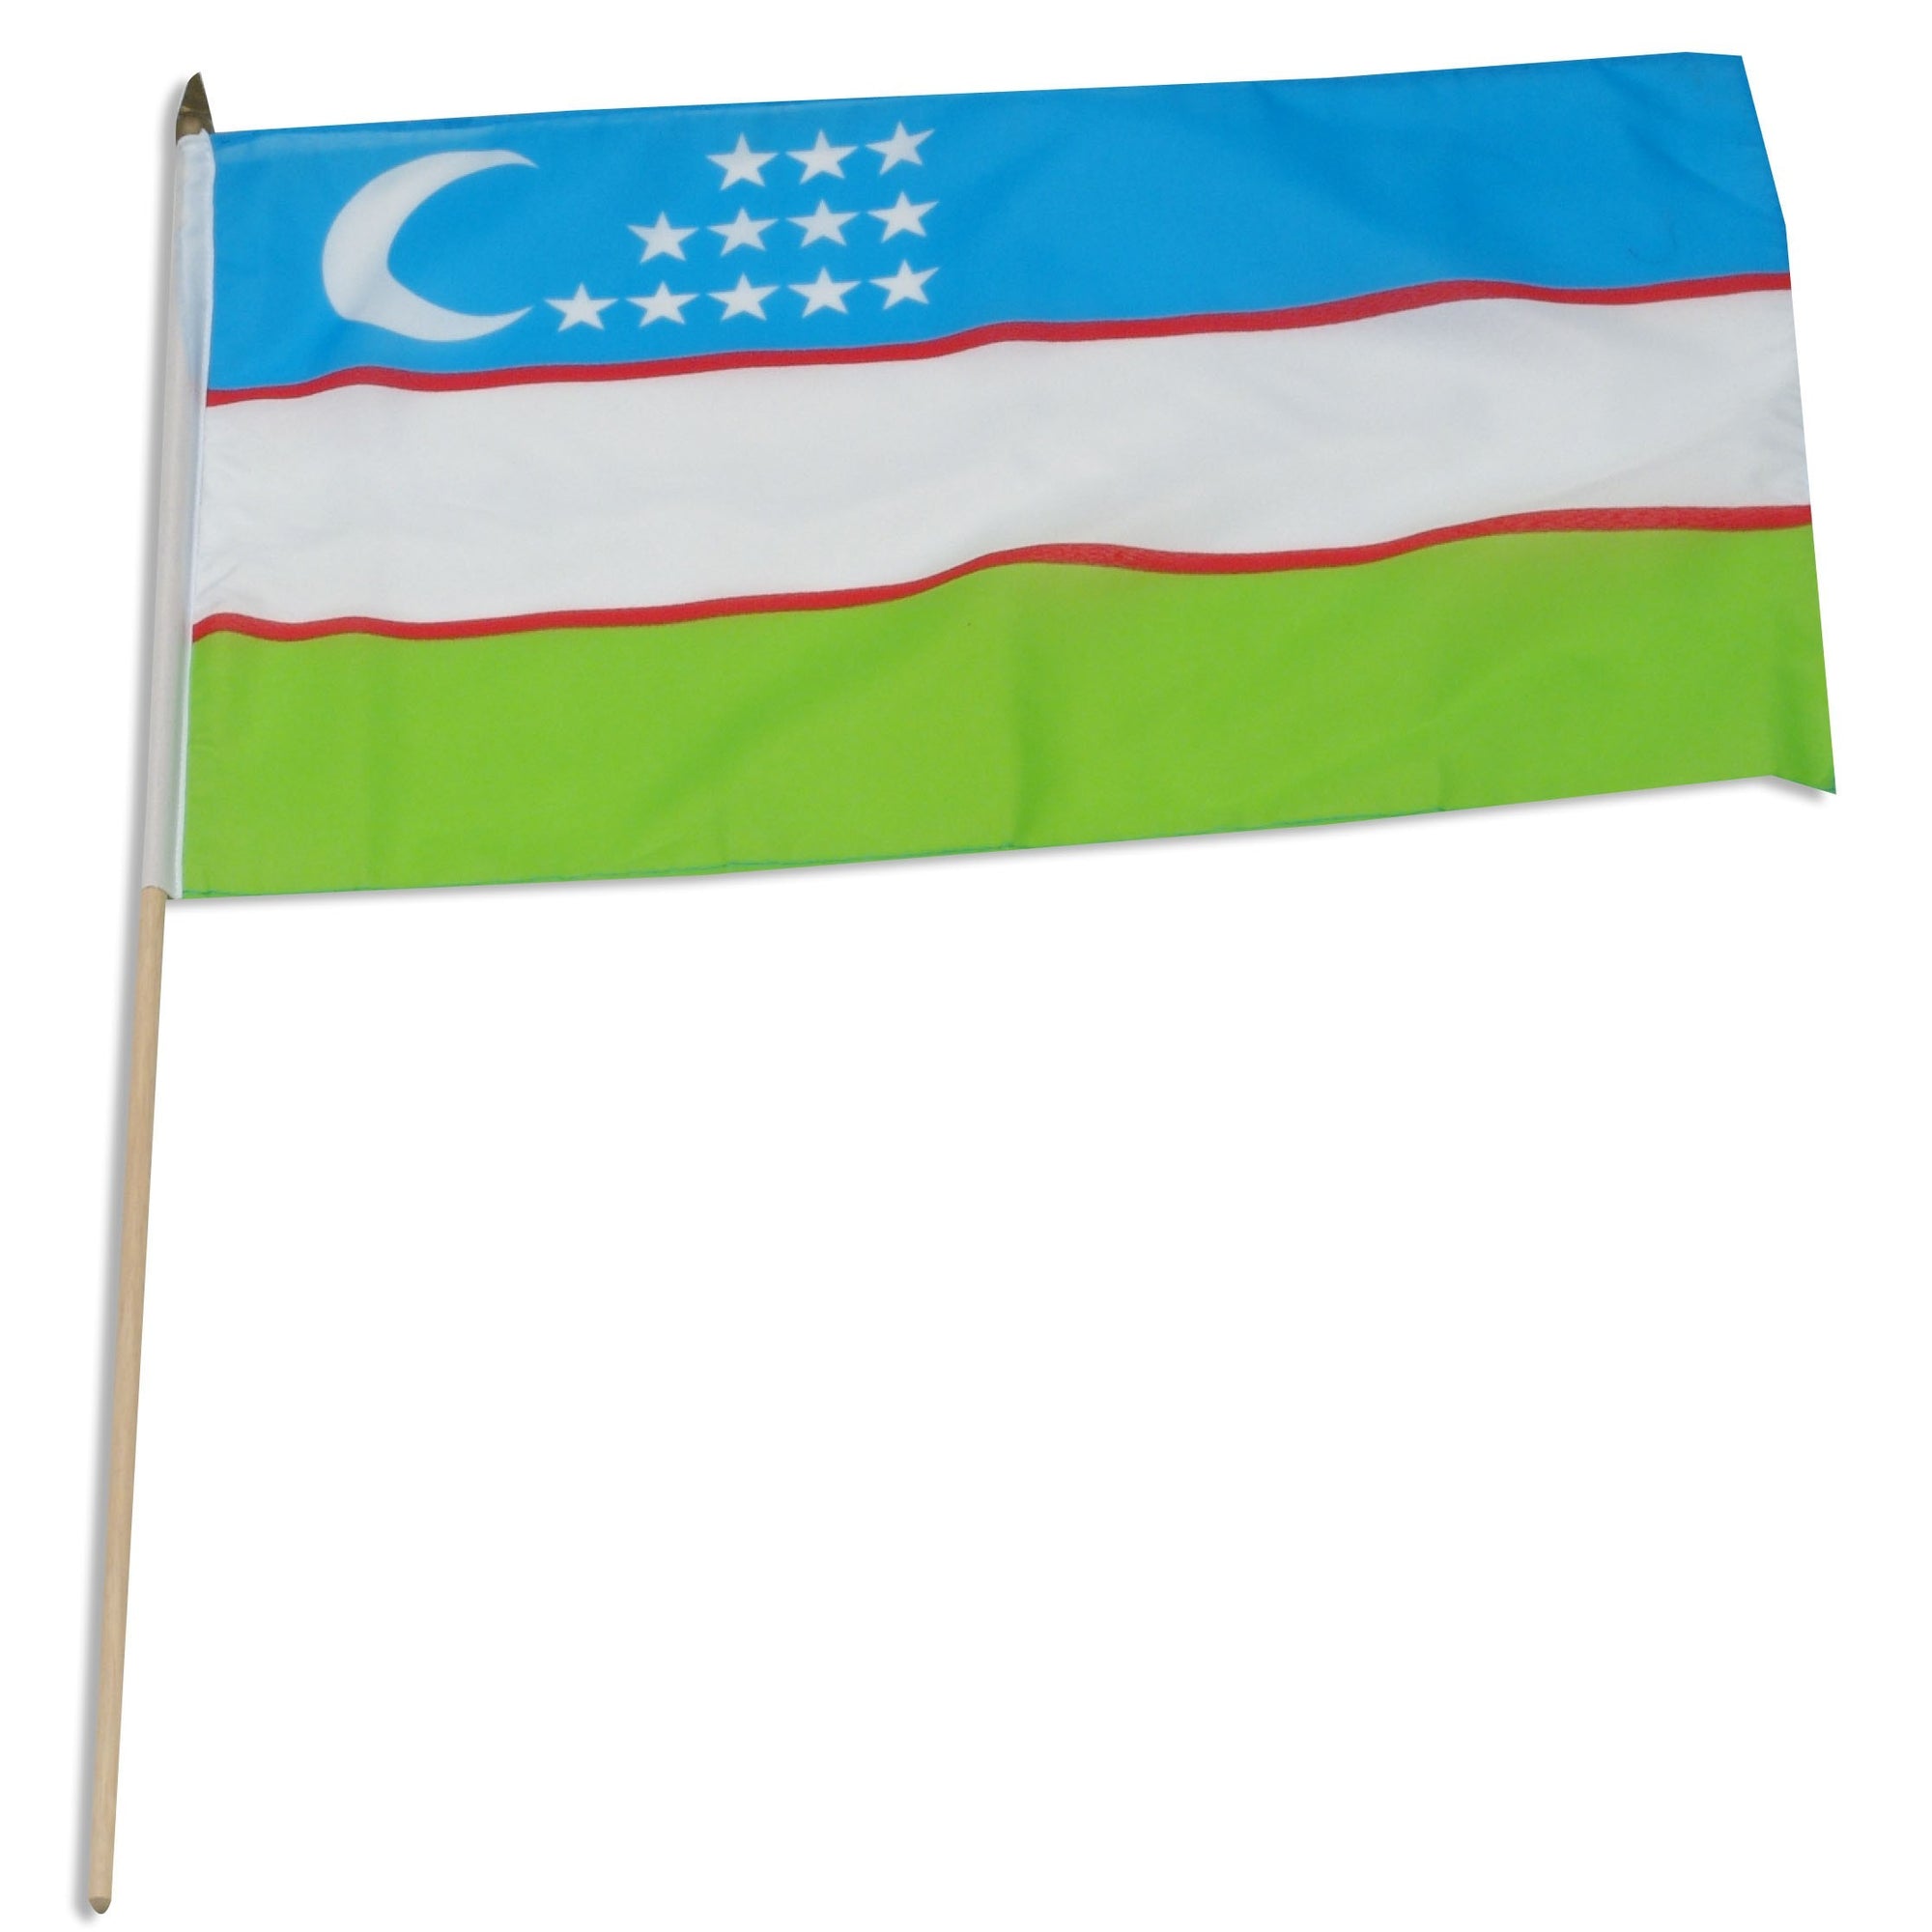 Uzbekistan flags for sale